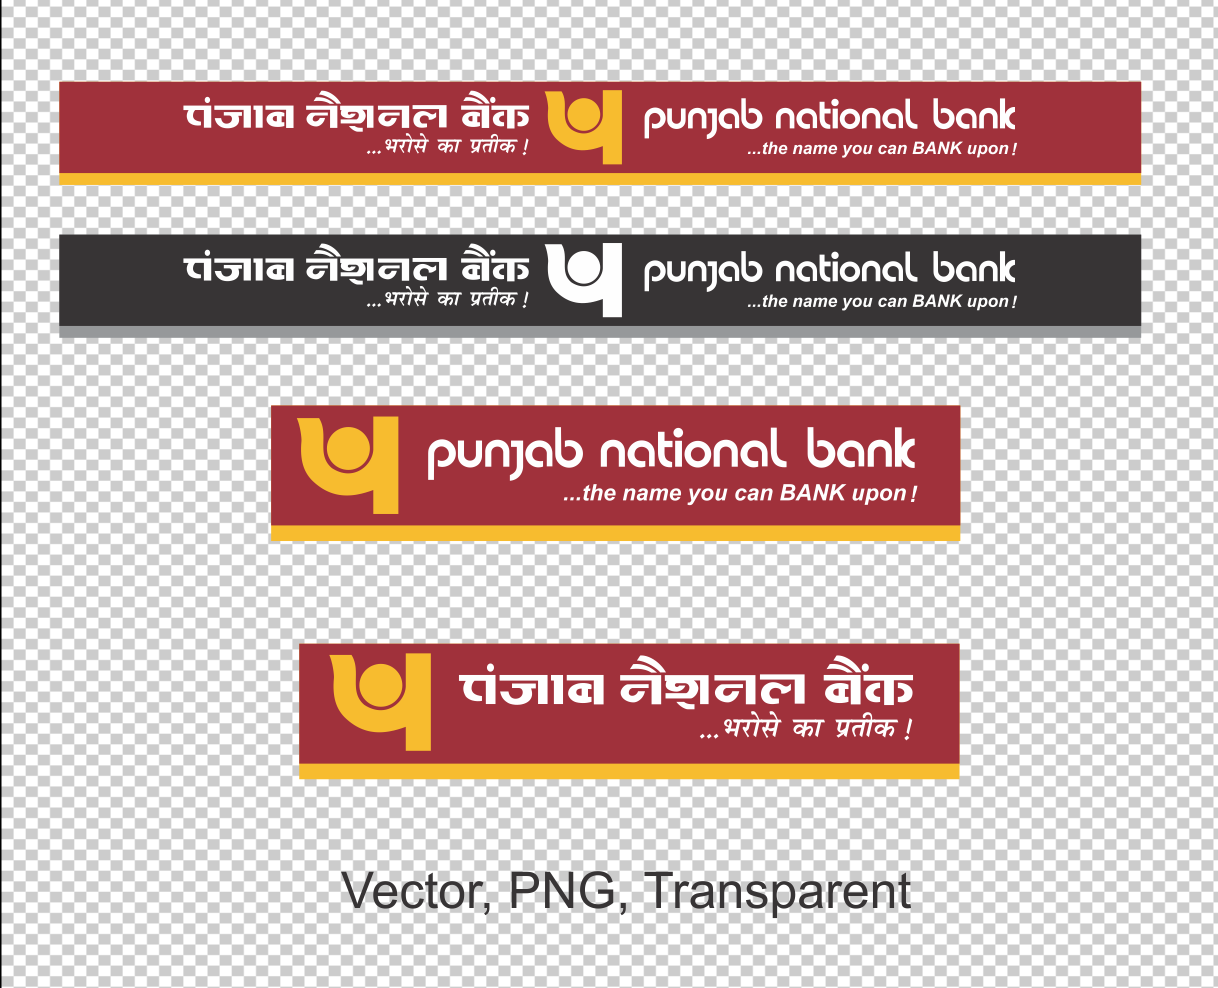 Punjab National Bank - Recent News & Activity